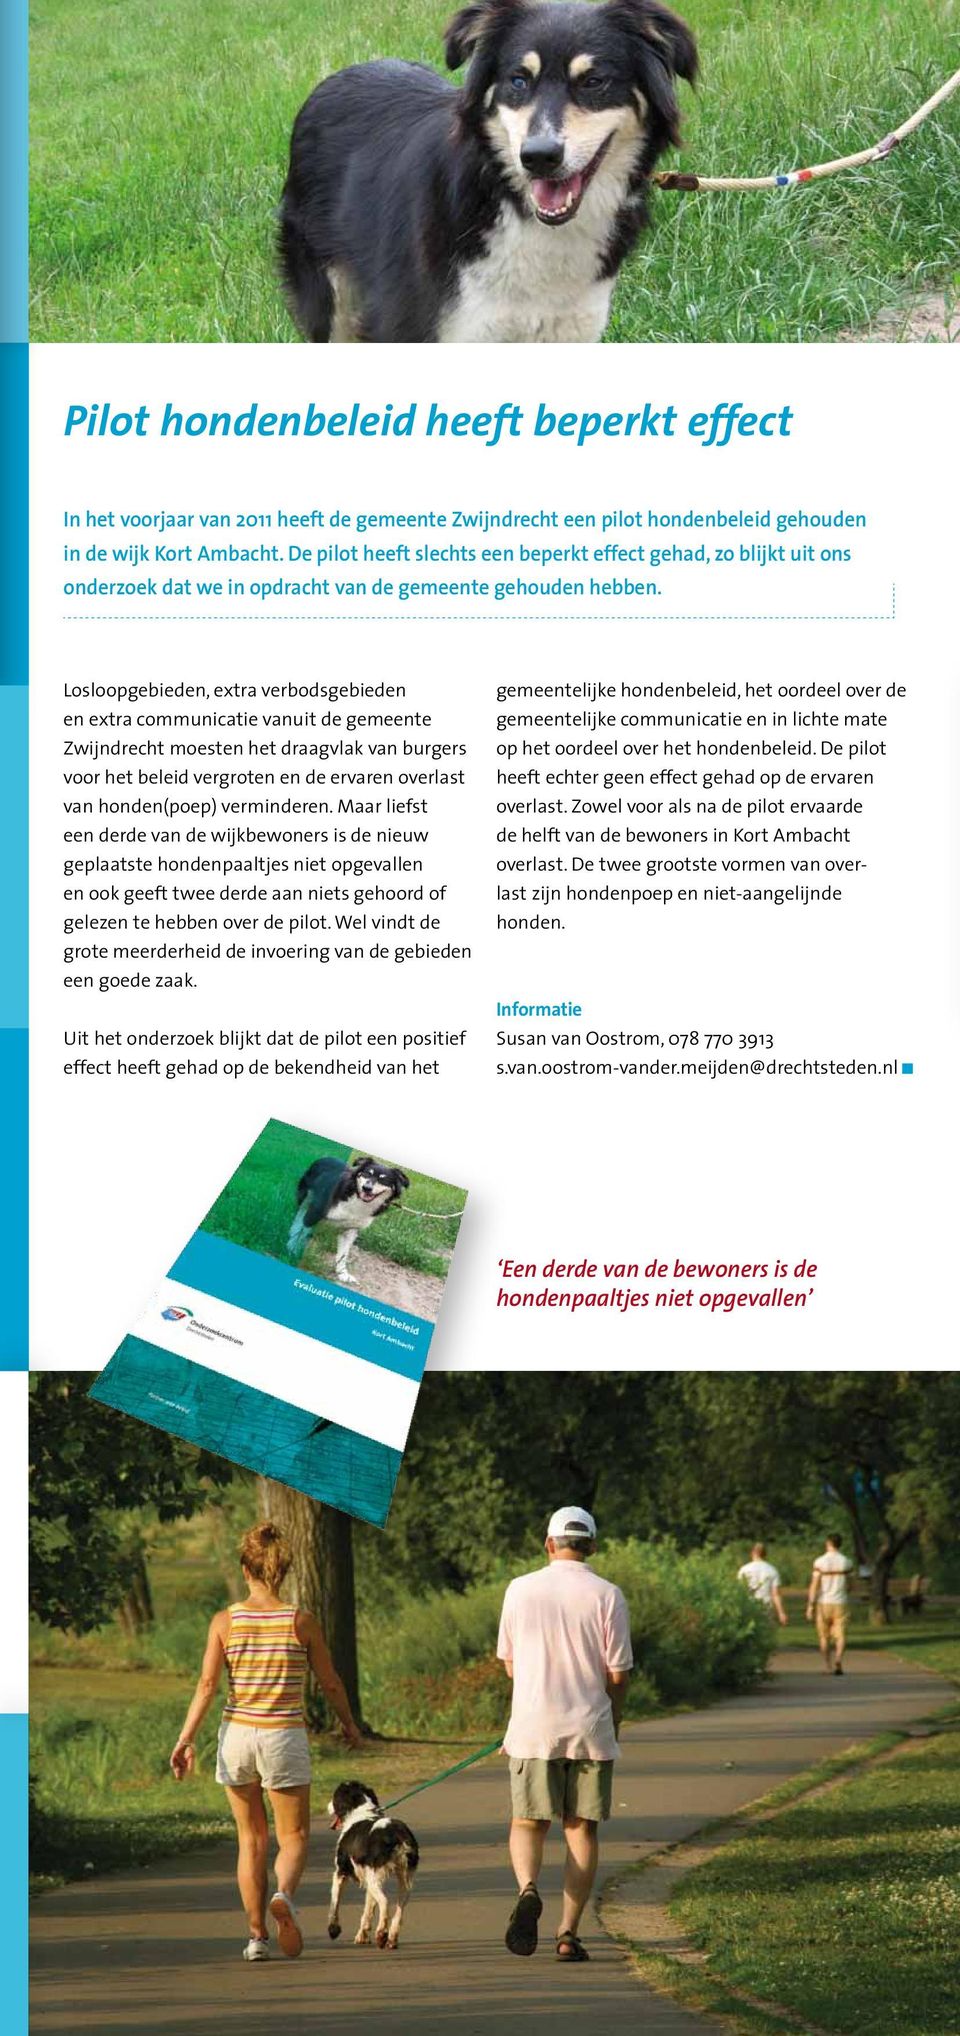 Losloopgebieden, extra verbodsgebieden en extra communicatie vanuit de gemeente Zwijndrecht moesten het draagvlak van burgers voor het beleid vergroten en de ervaren overlast van honden(poep)